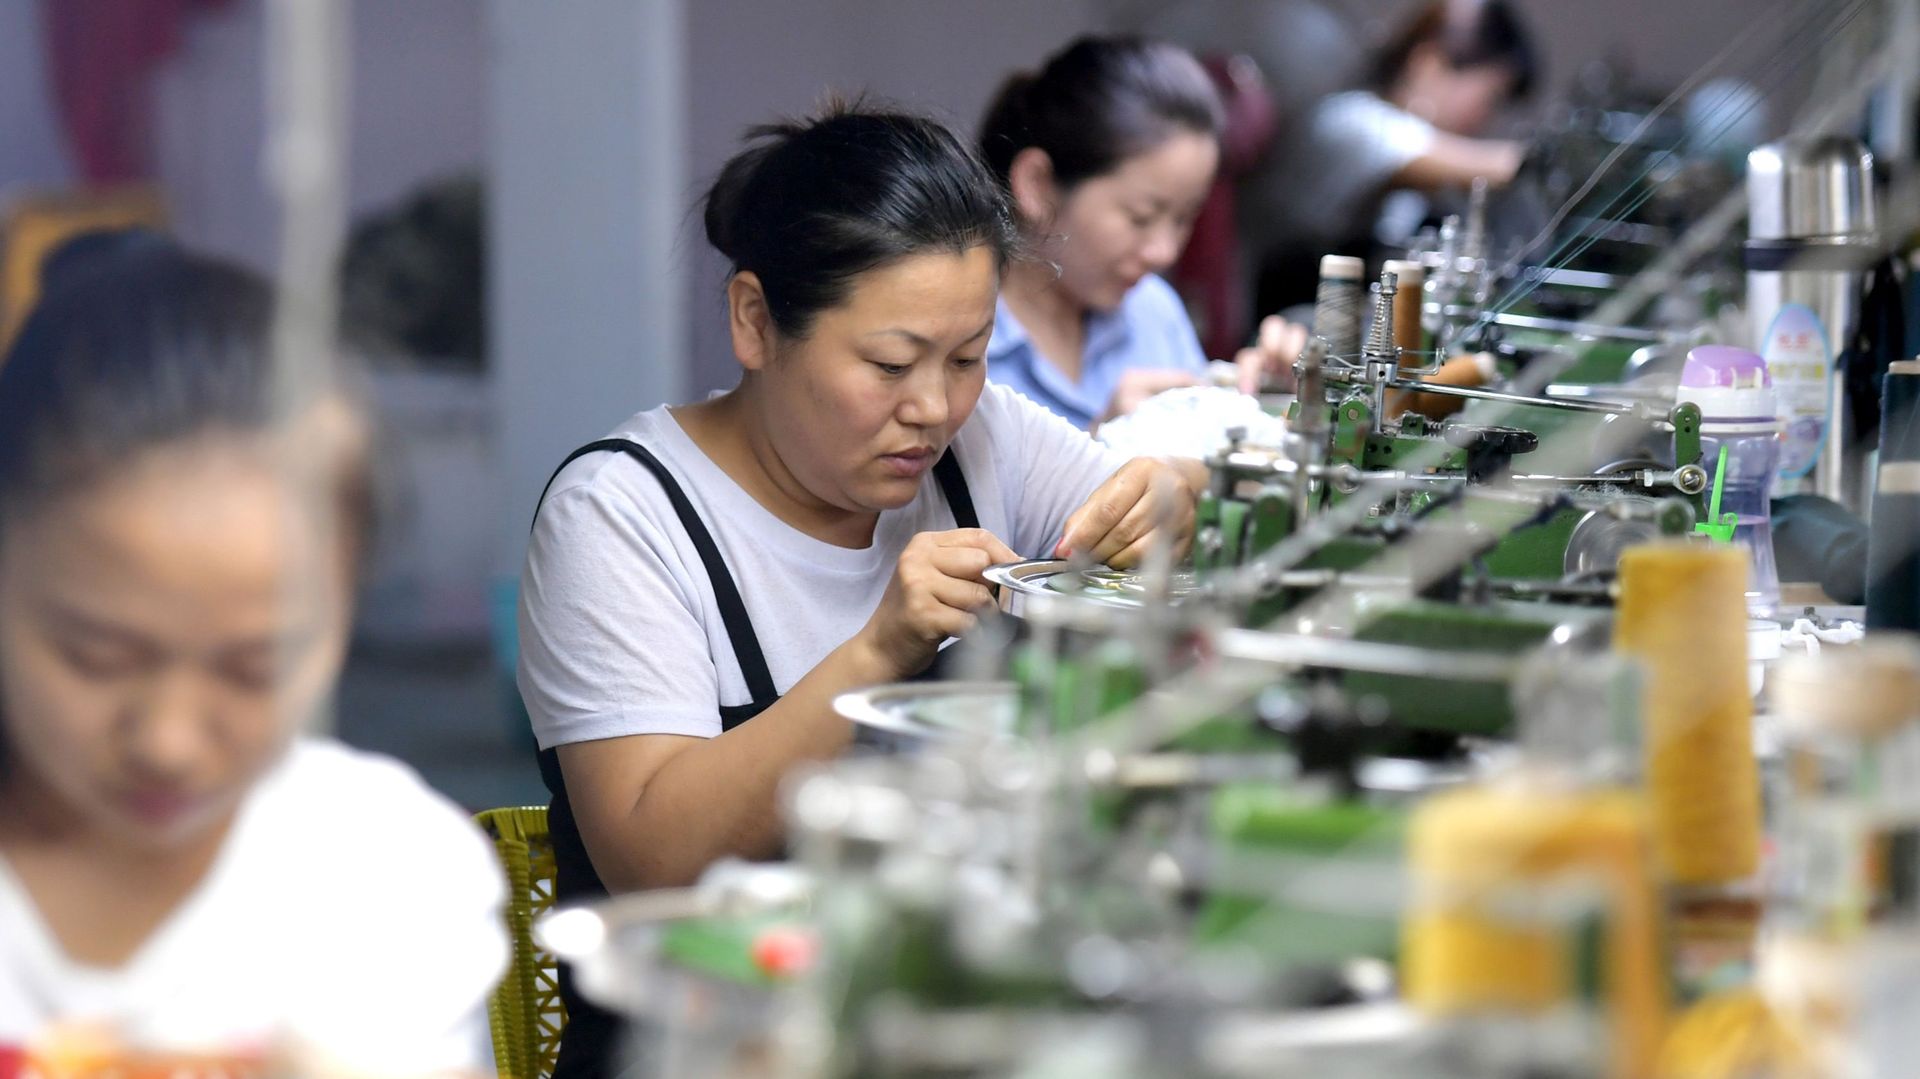 Les vêtements vendus par Zalando sont fabriqués dans plusieurs pays où le droit du travail ne permet pas toujours une bonne rémunération (ici en Chine).